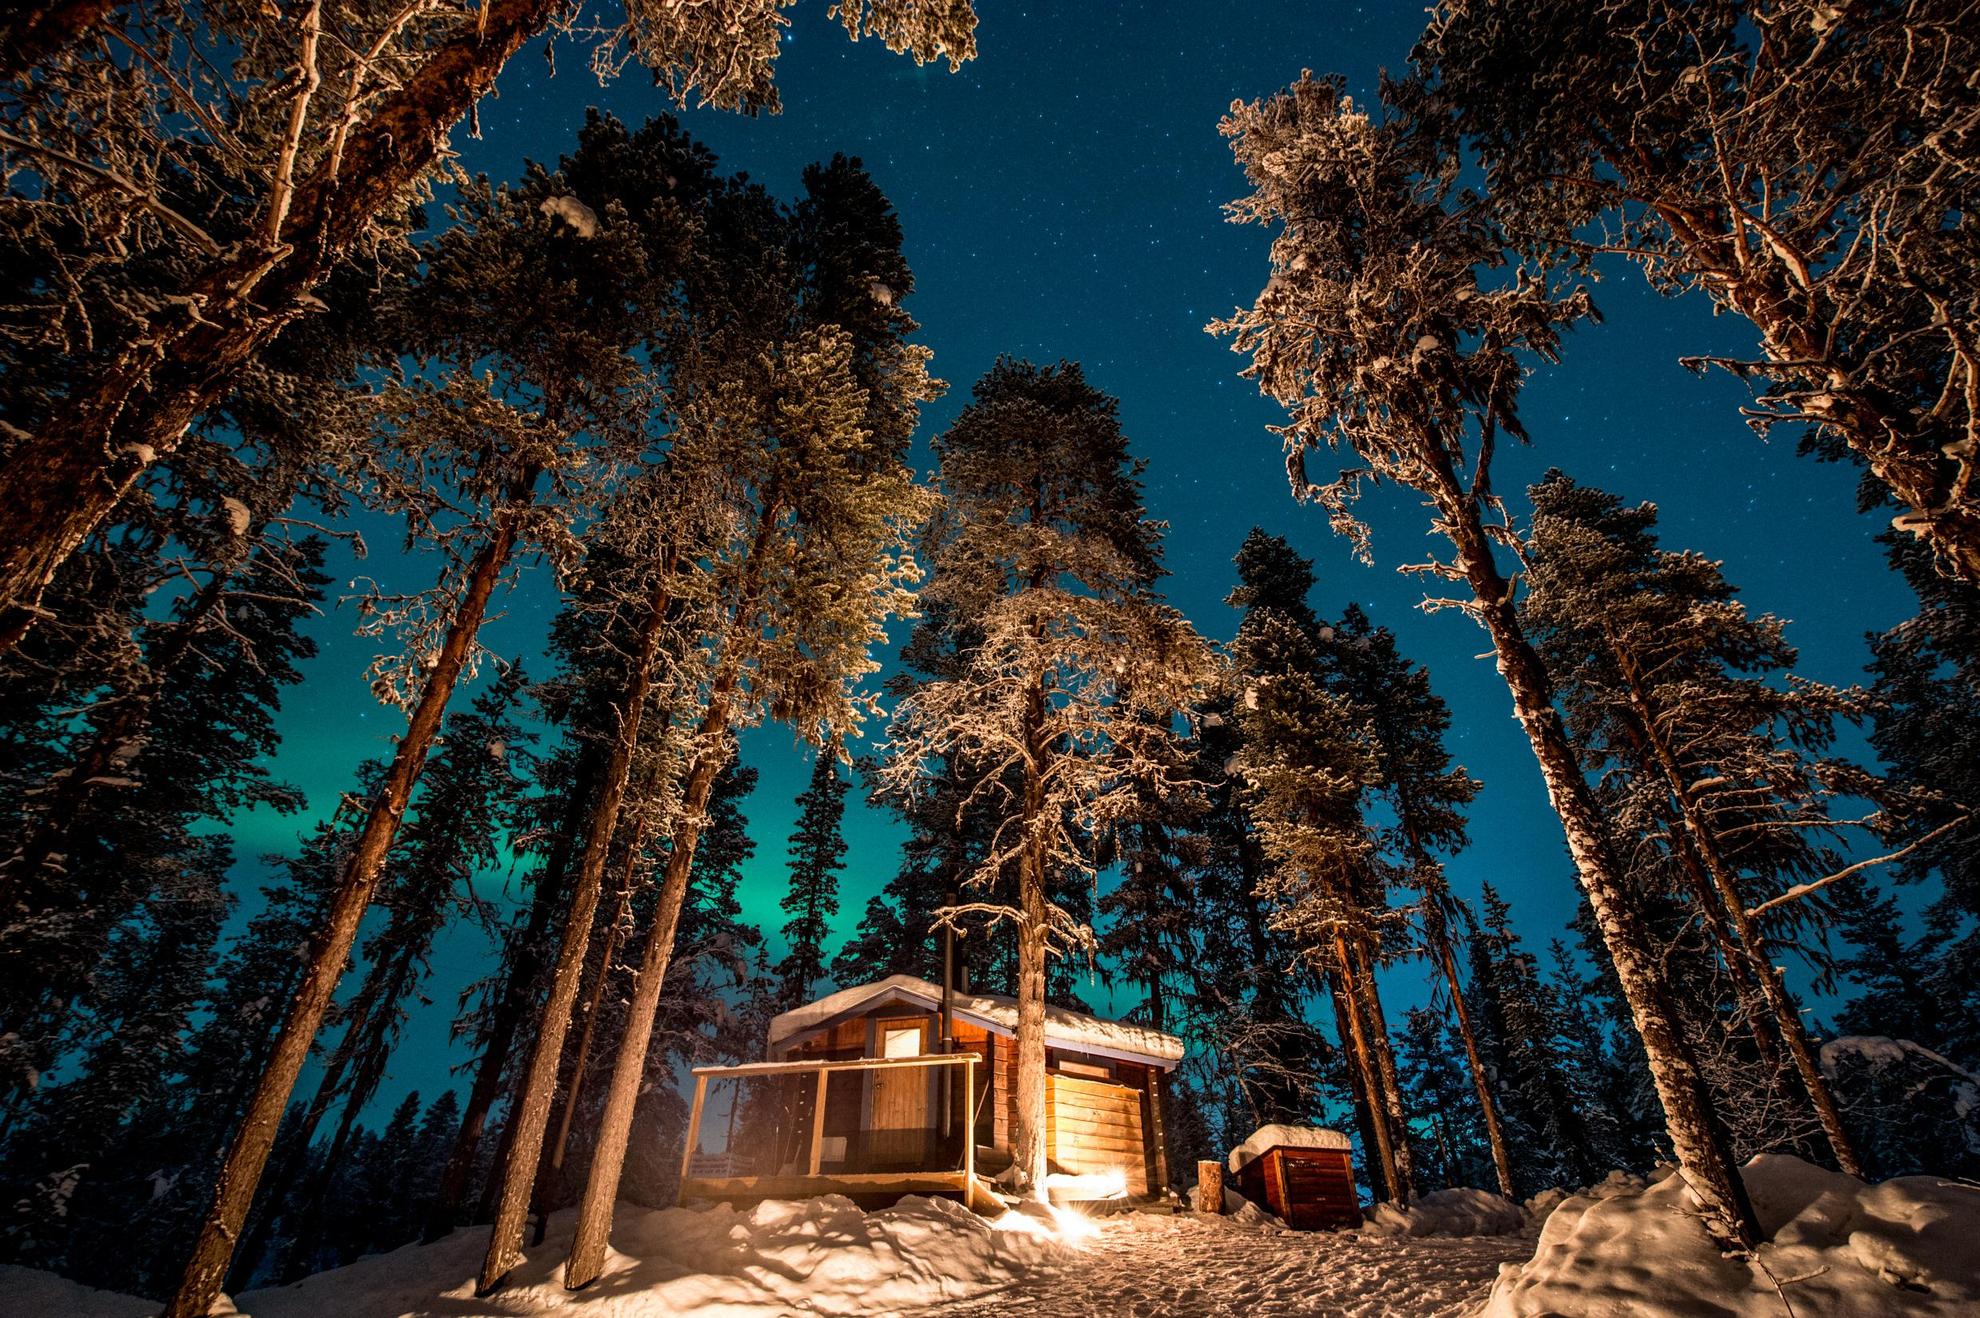 Een houten hut in een besneeuwd bos. Tussen de bomen schijnt het groene noorderlicht.